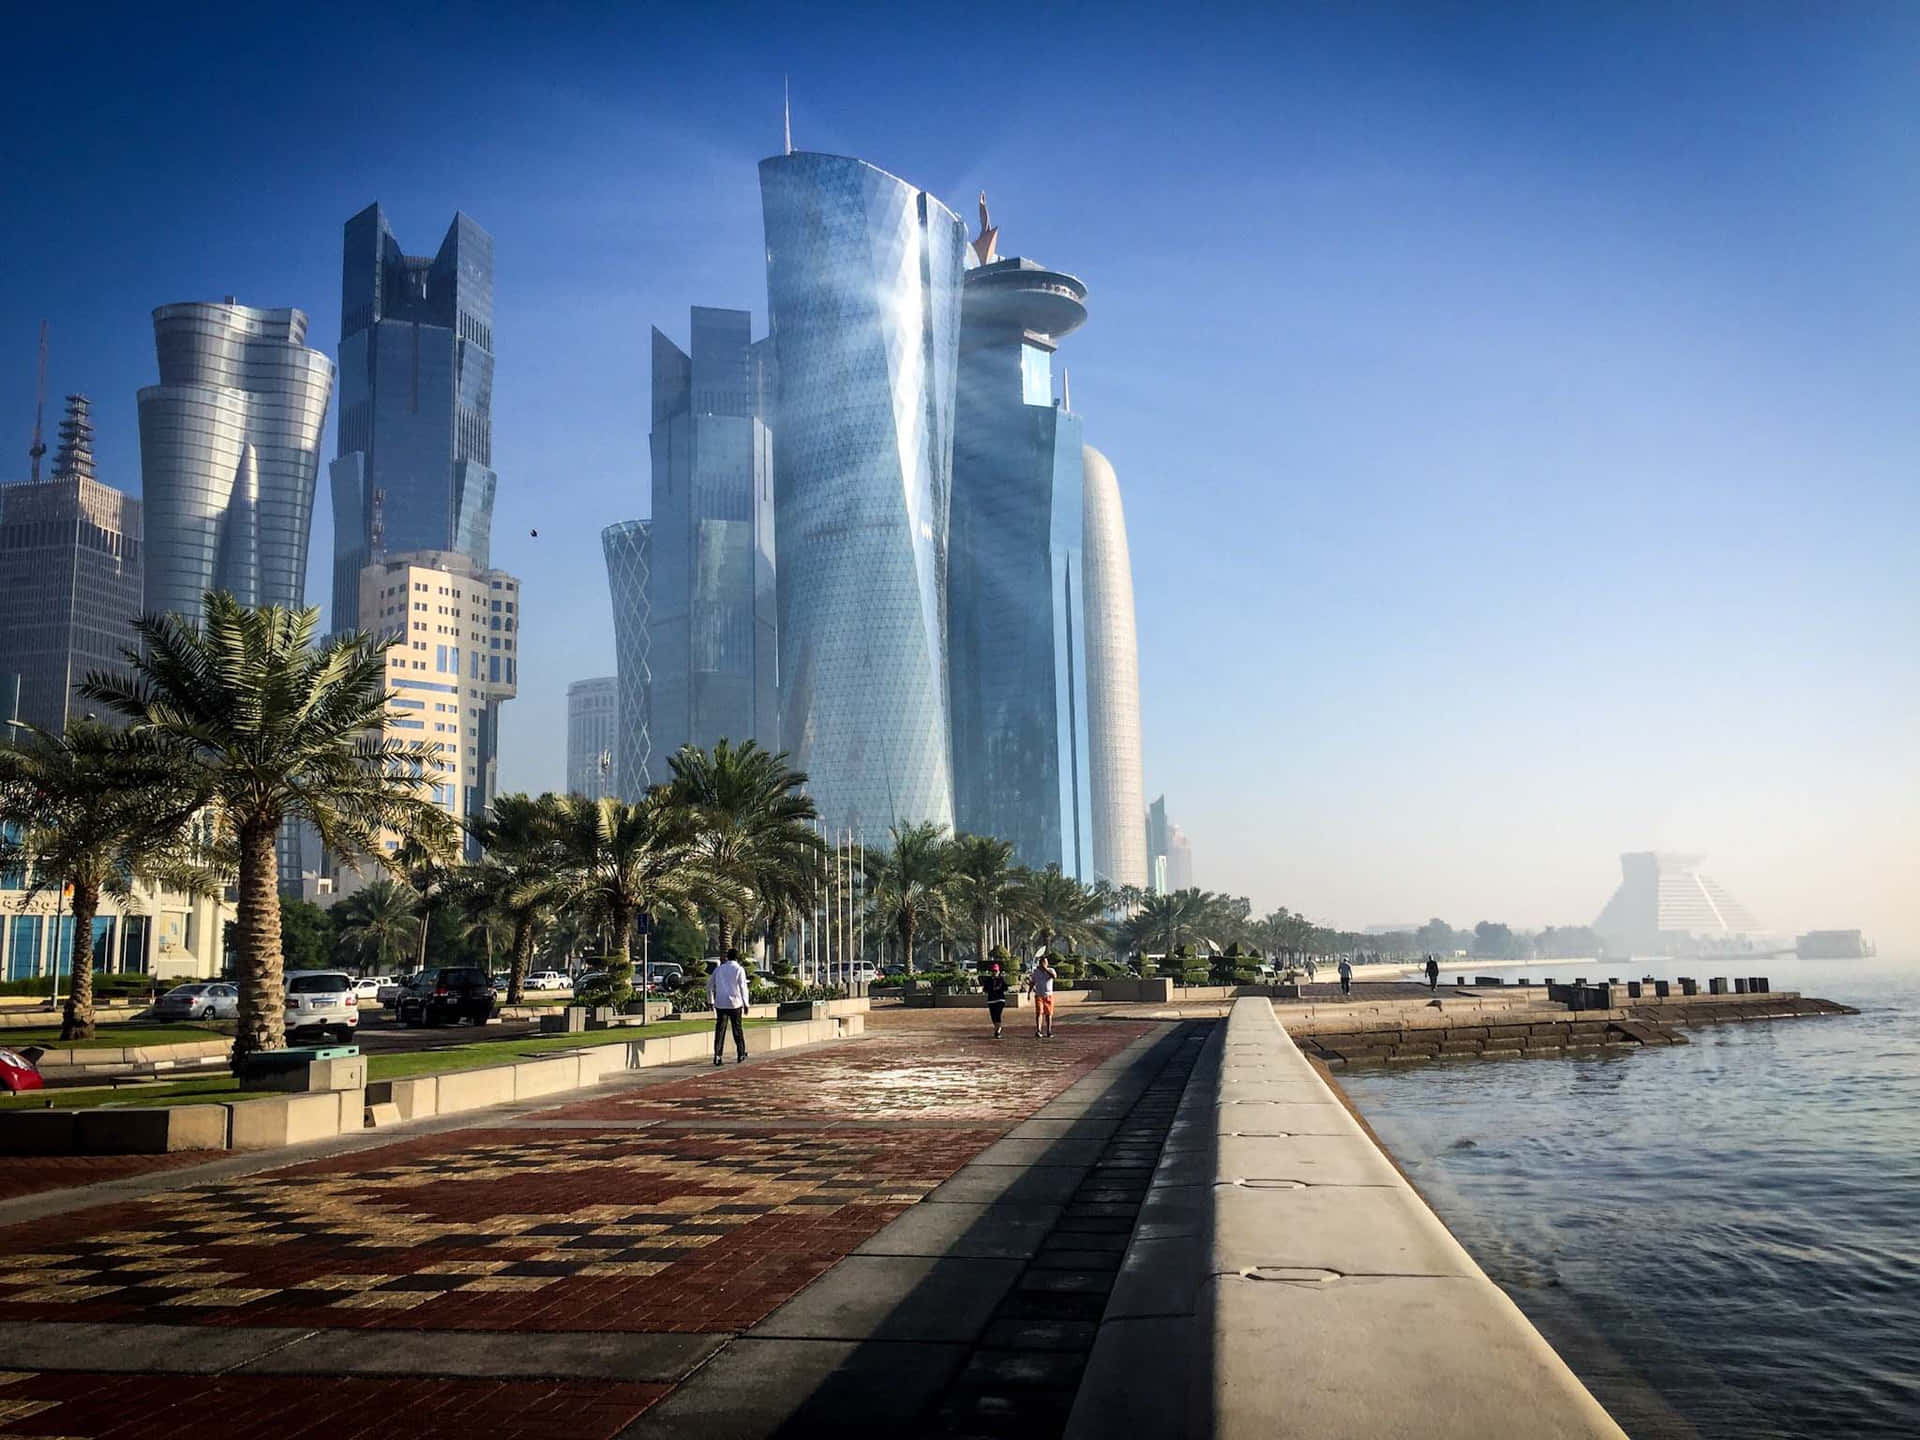 Ilmaestoso Skyline Del Qatar Contro Un Tramonto Mozzafiato.